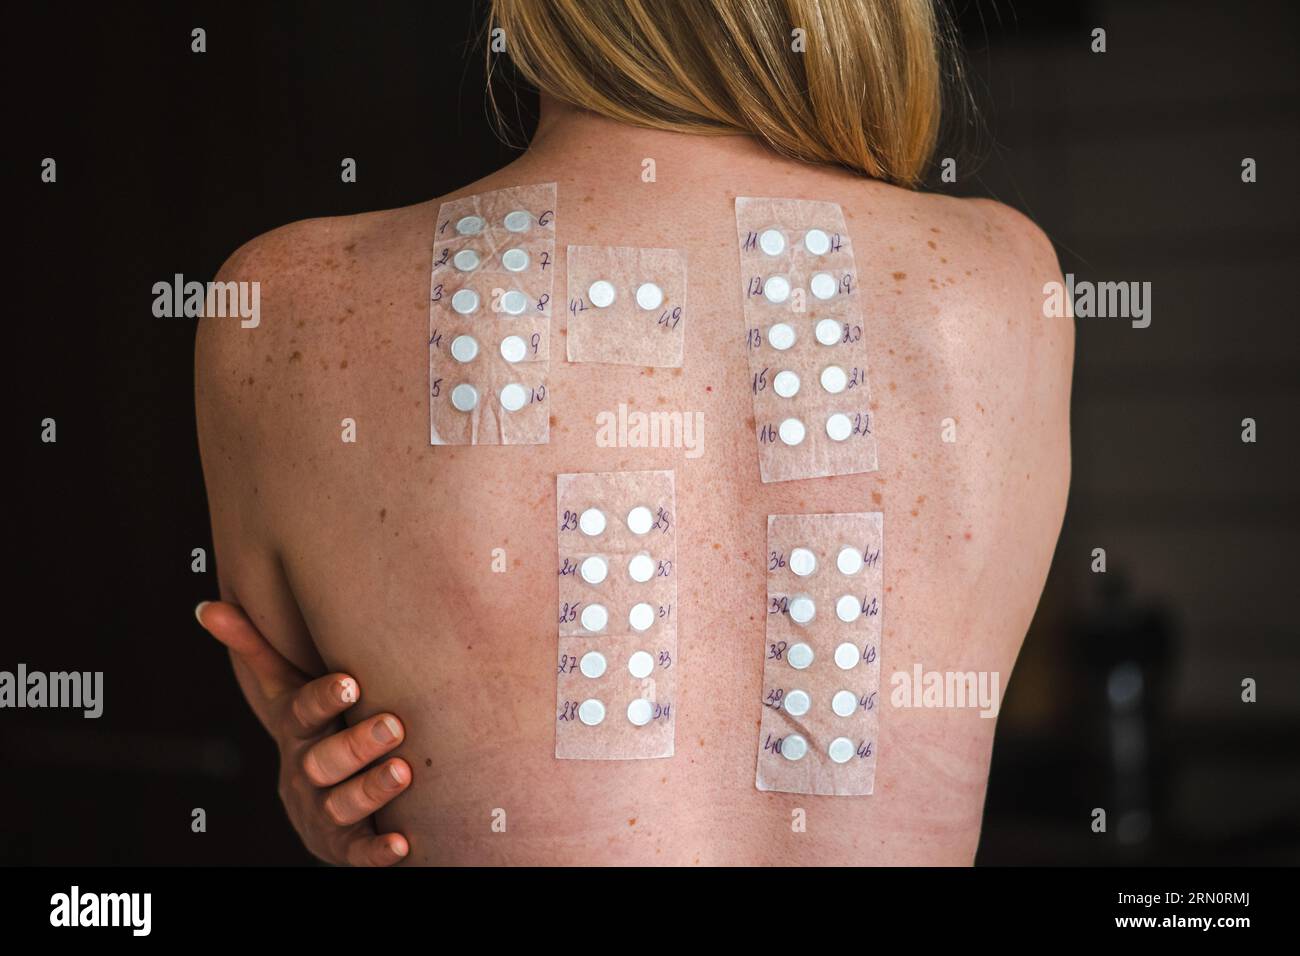 Vrai patch test sur l'épaule nue et le dos d'une jeune fille blonde cheveux. Test d'allergie réaction allergique cutanée allergique Banque D'Images